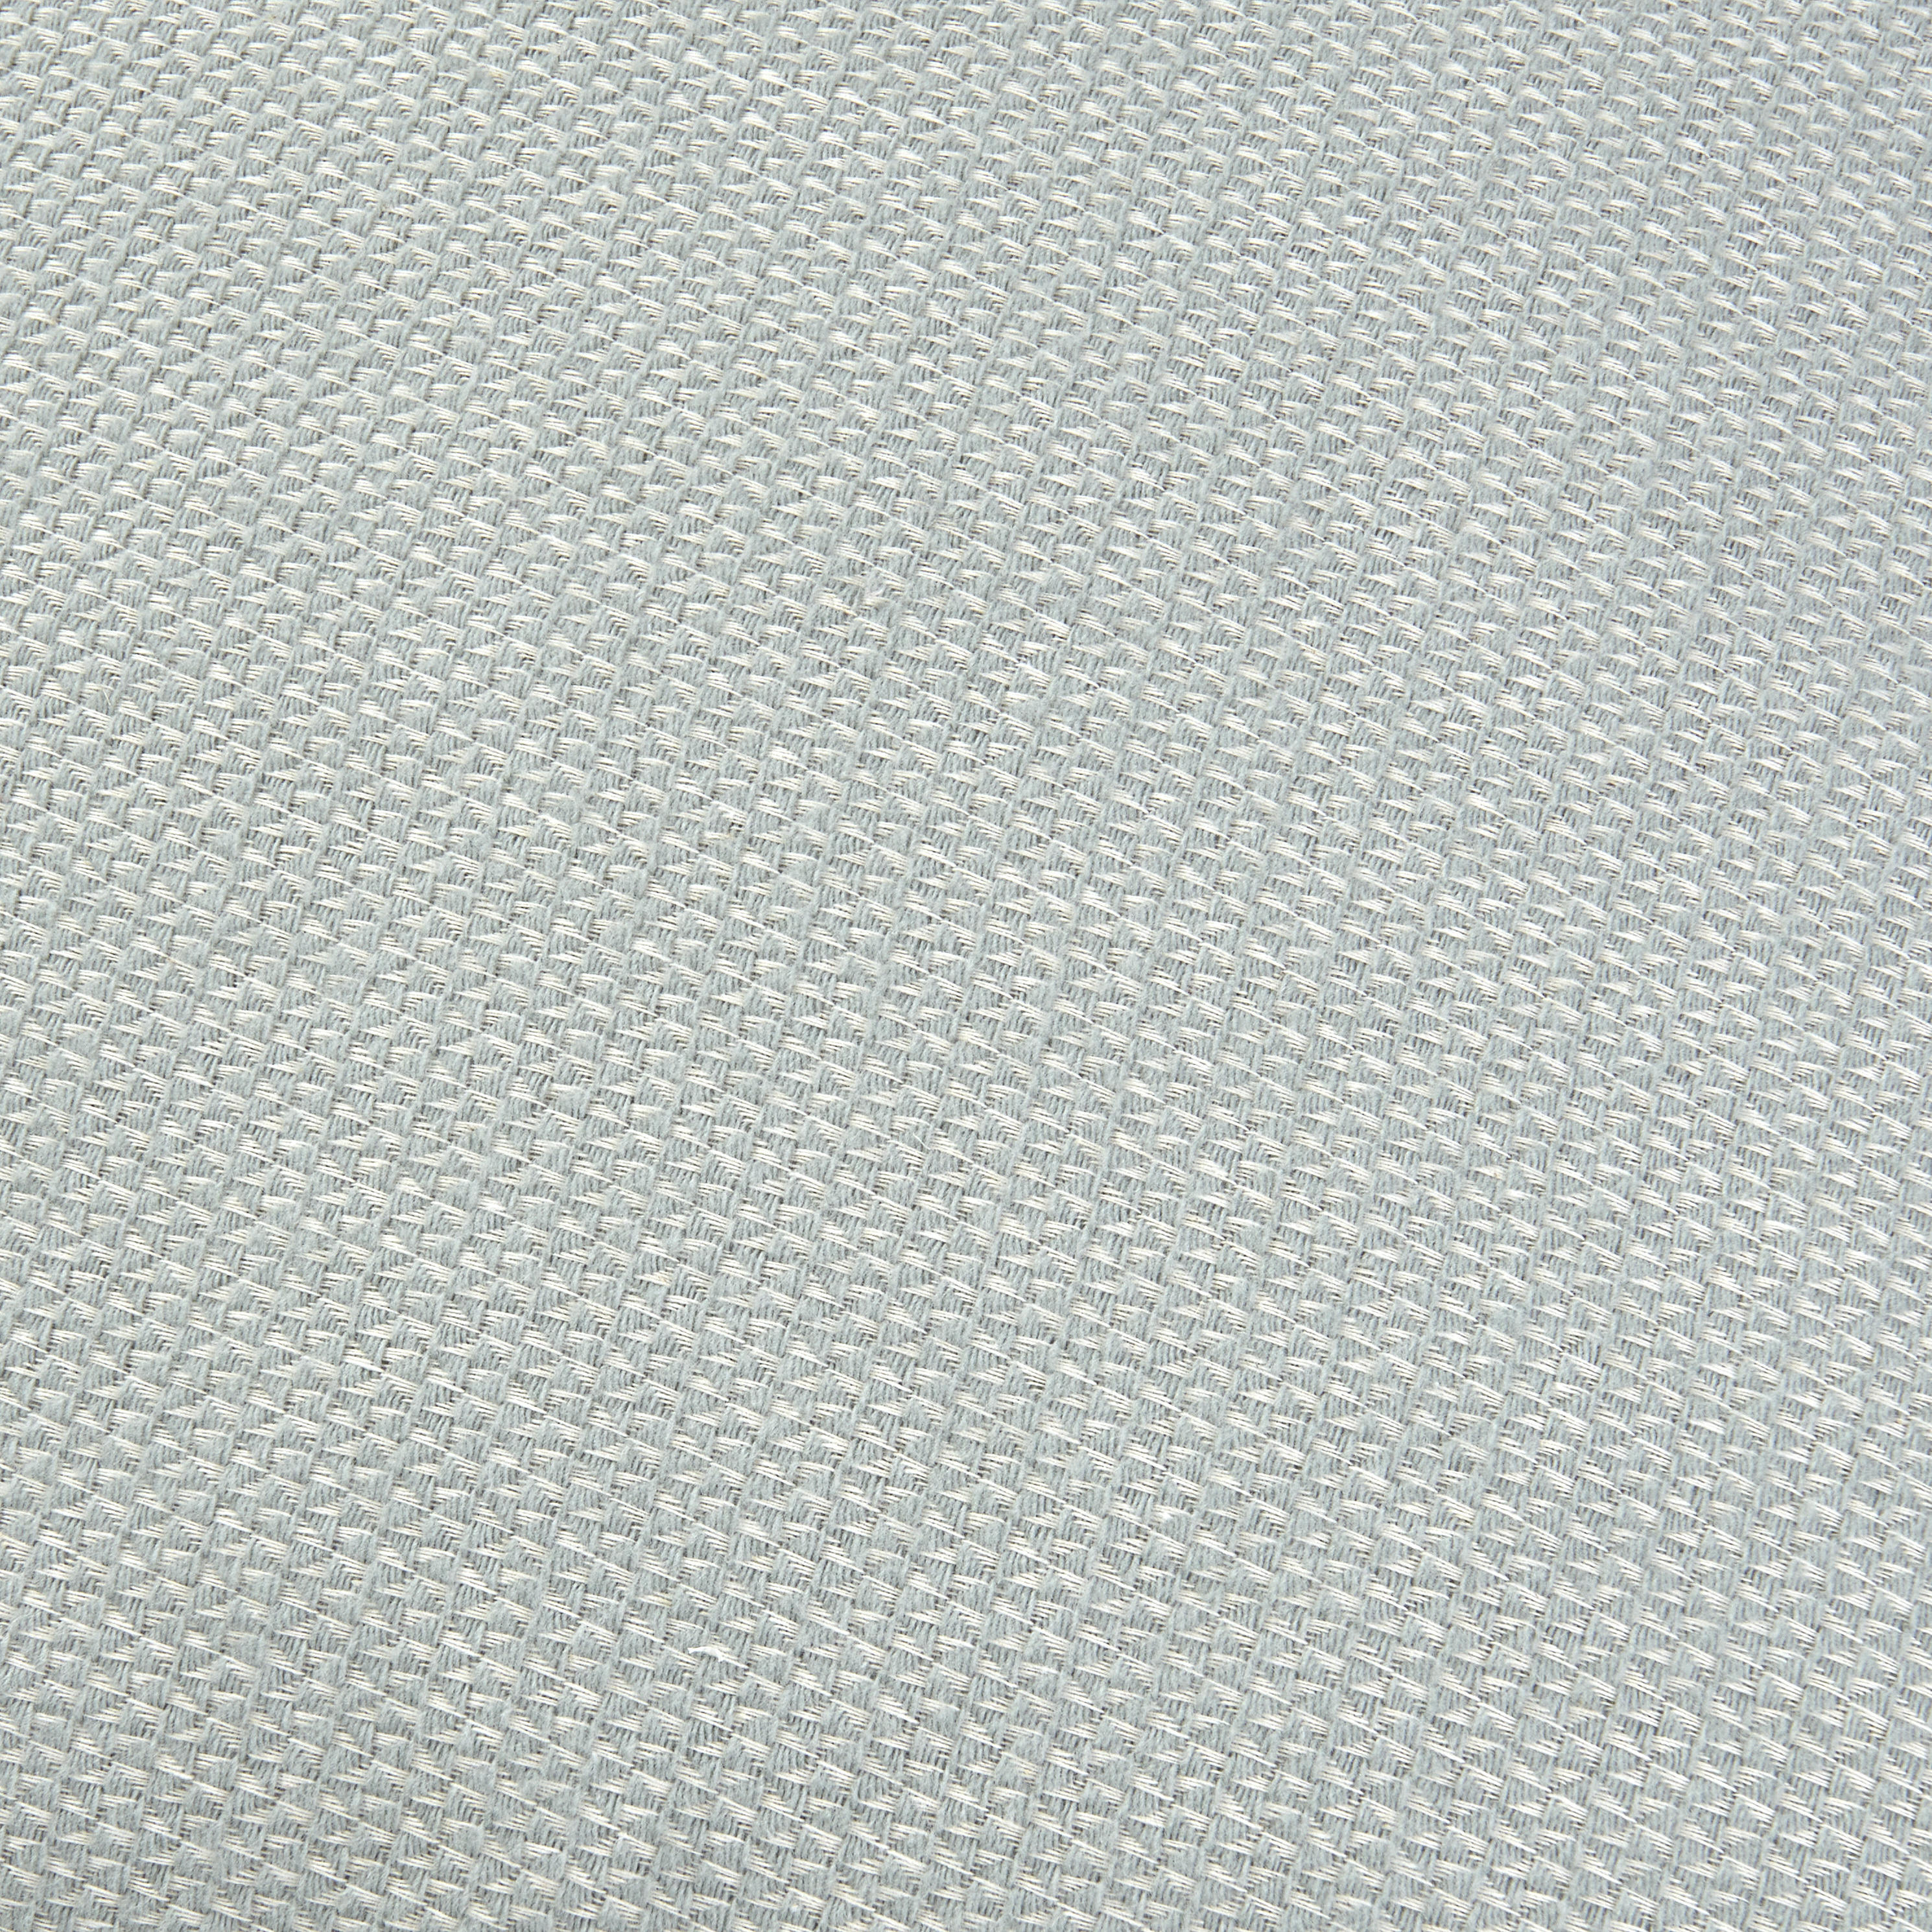 ZIERKISSEN  50/50 cm   - Hellgrün, KONVENTIONELL, Textil (50/50cm) - David Fussenegger